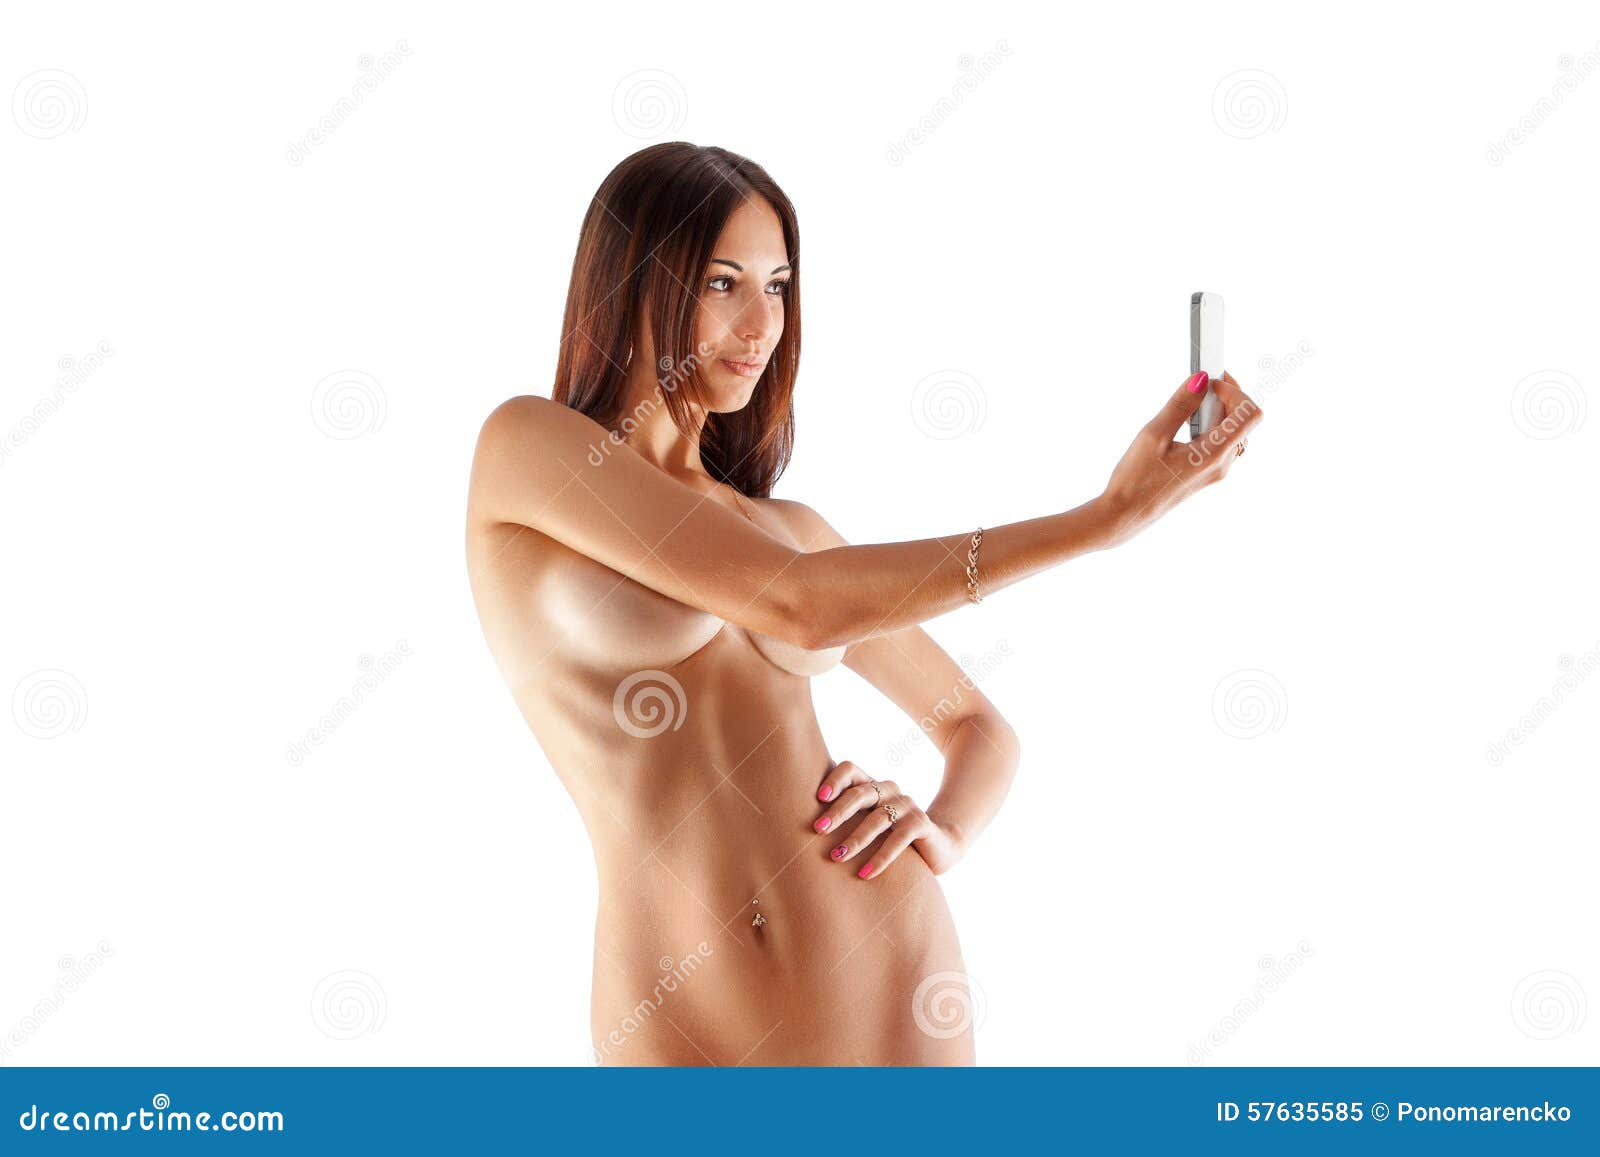 Selfie erotik XXX 69